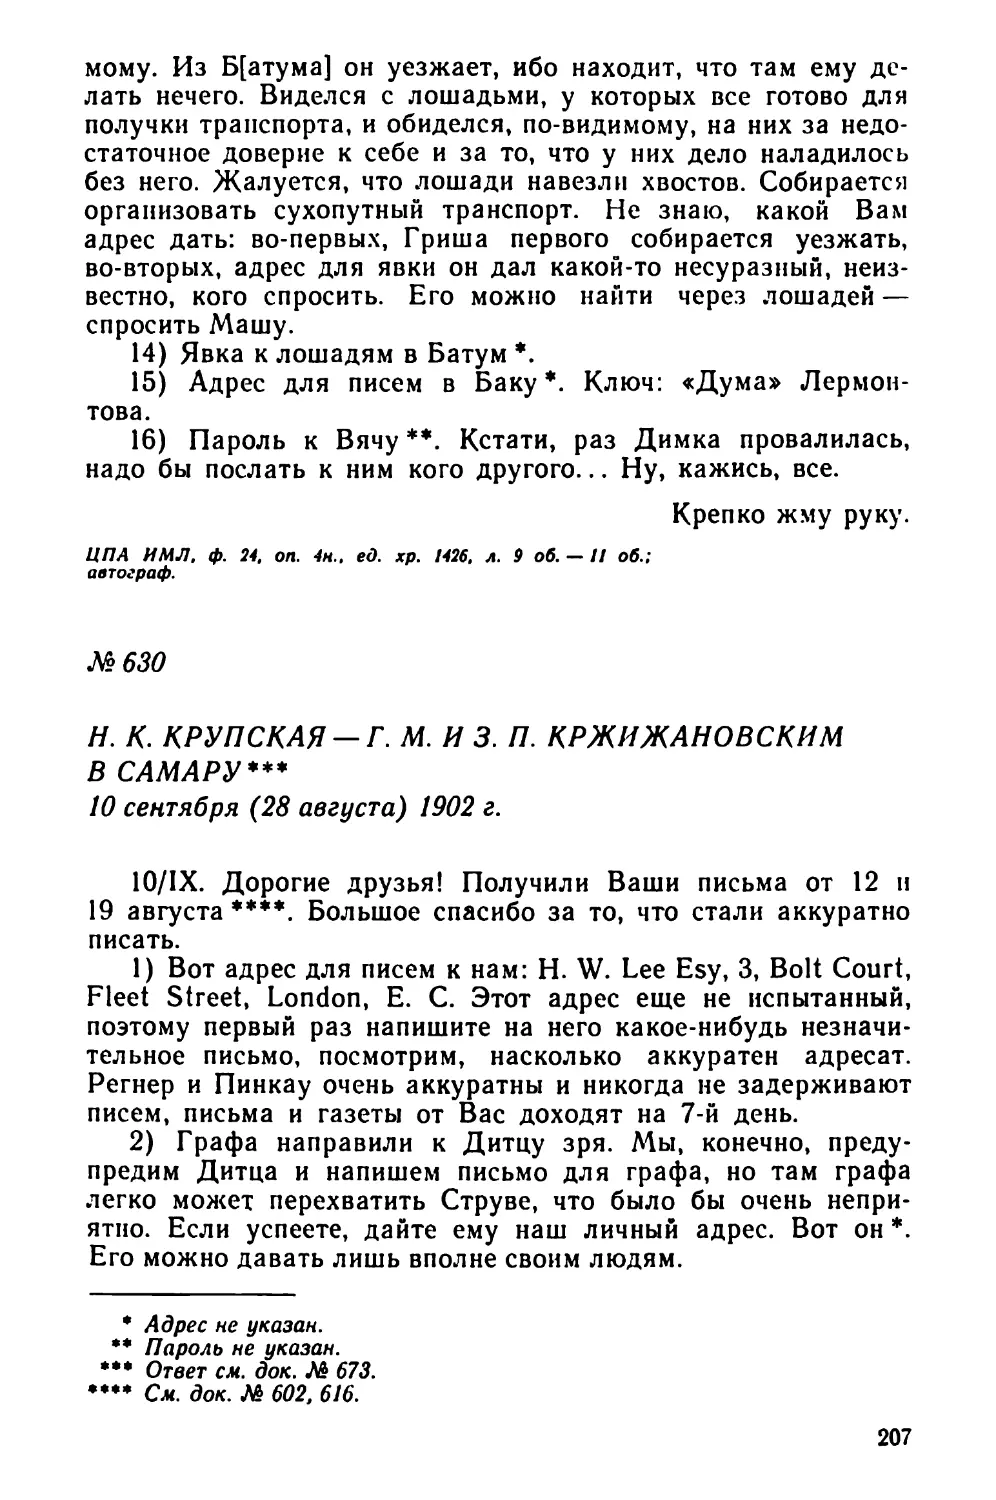 № 630 Н. К. Крупская — Г. М. и 3. П. Кржижановским в Самару. 10 сентября